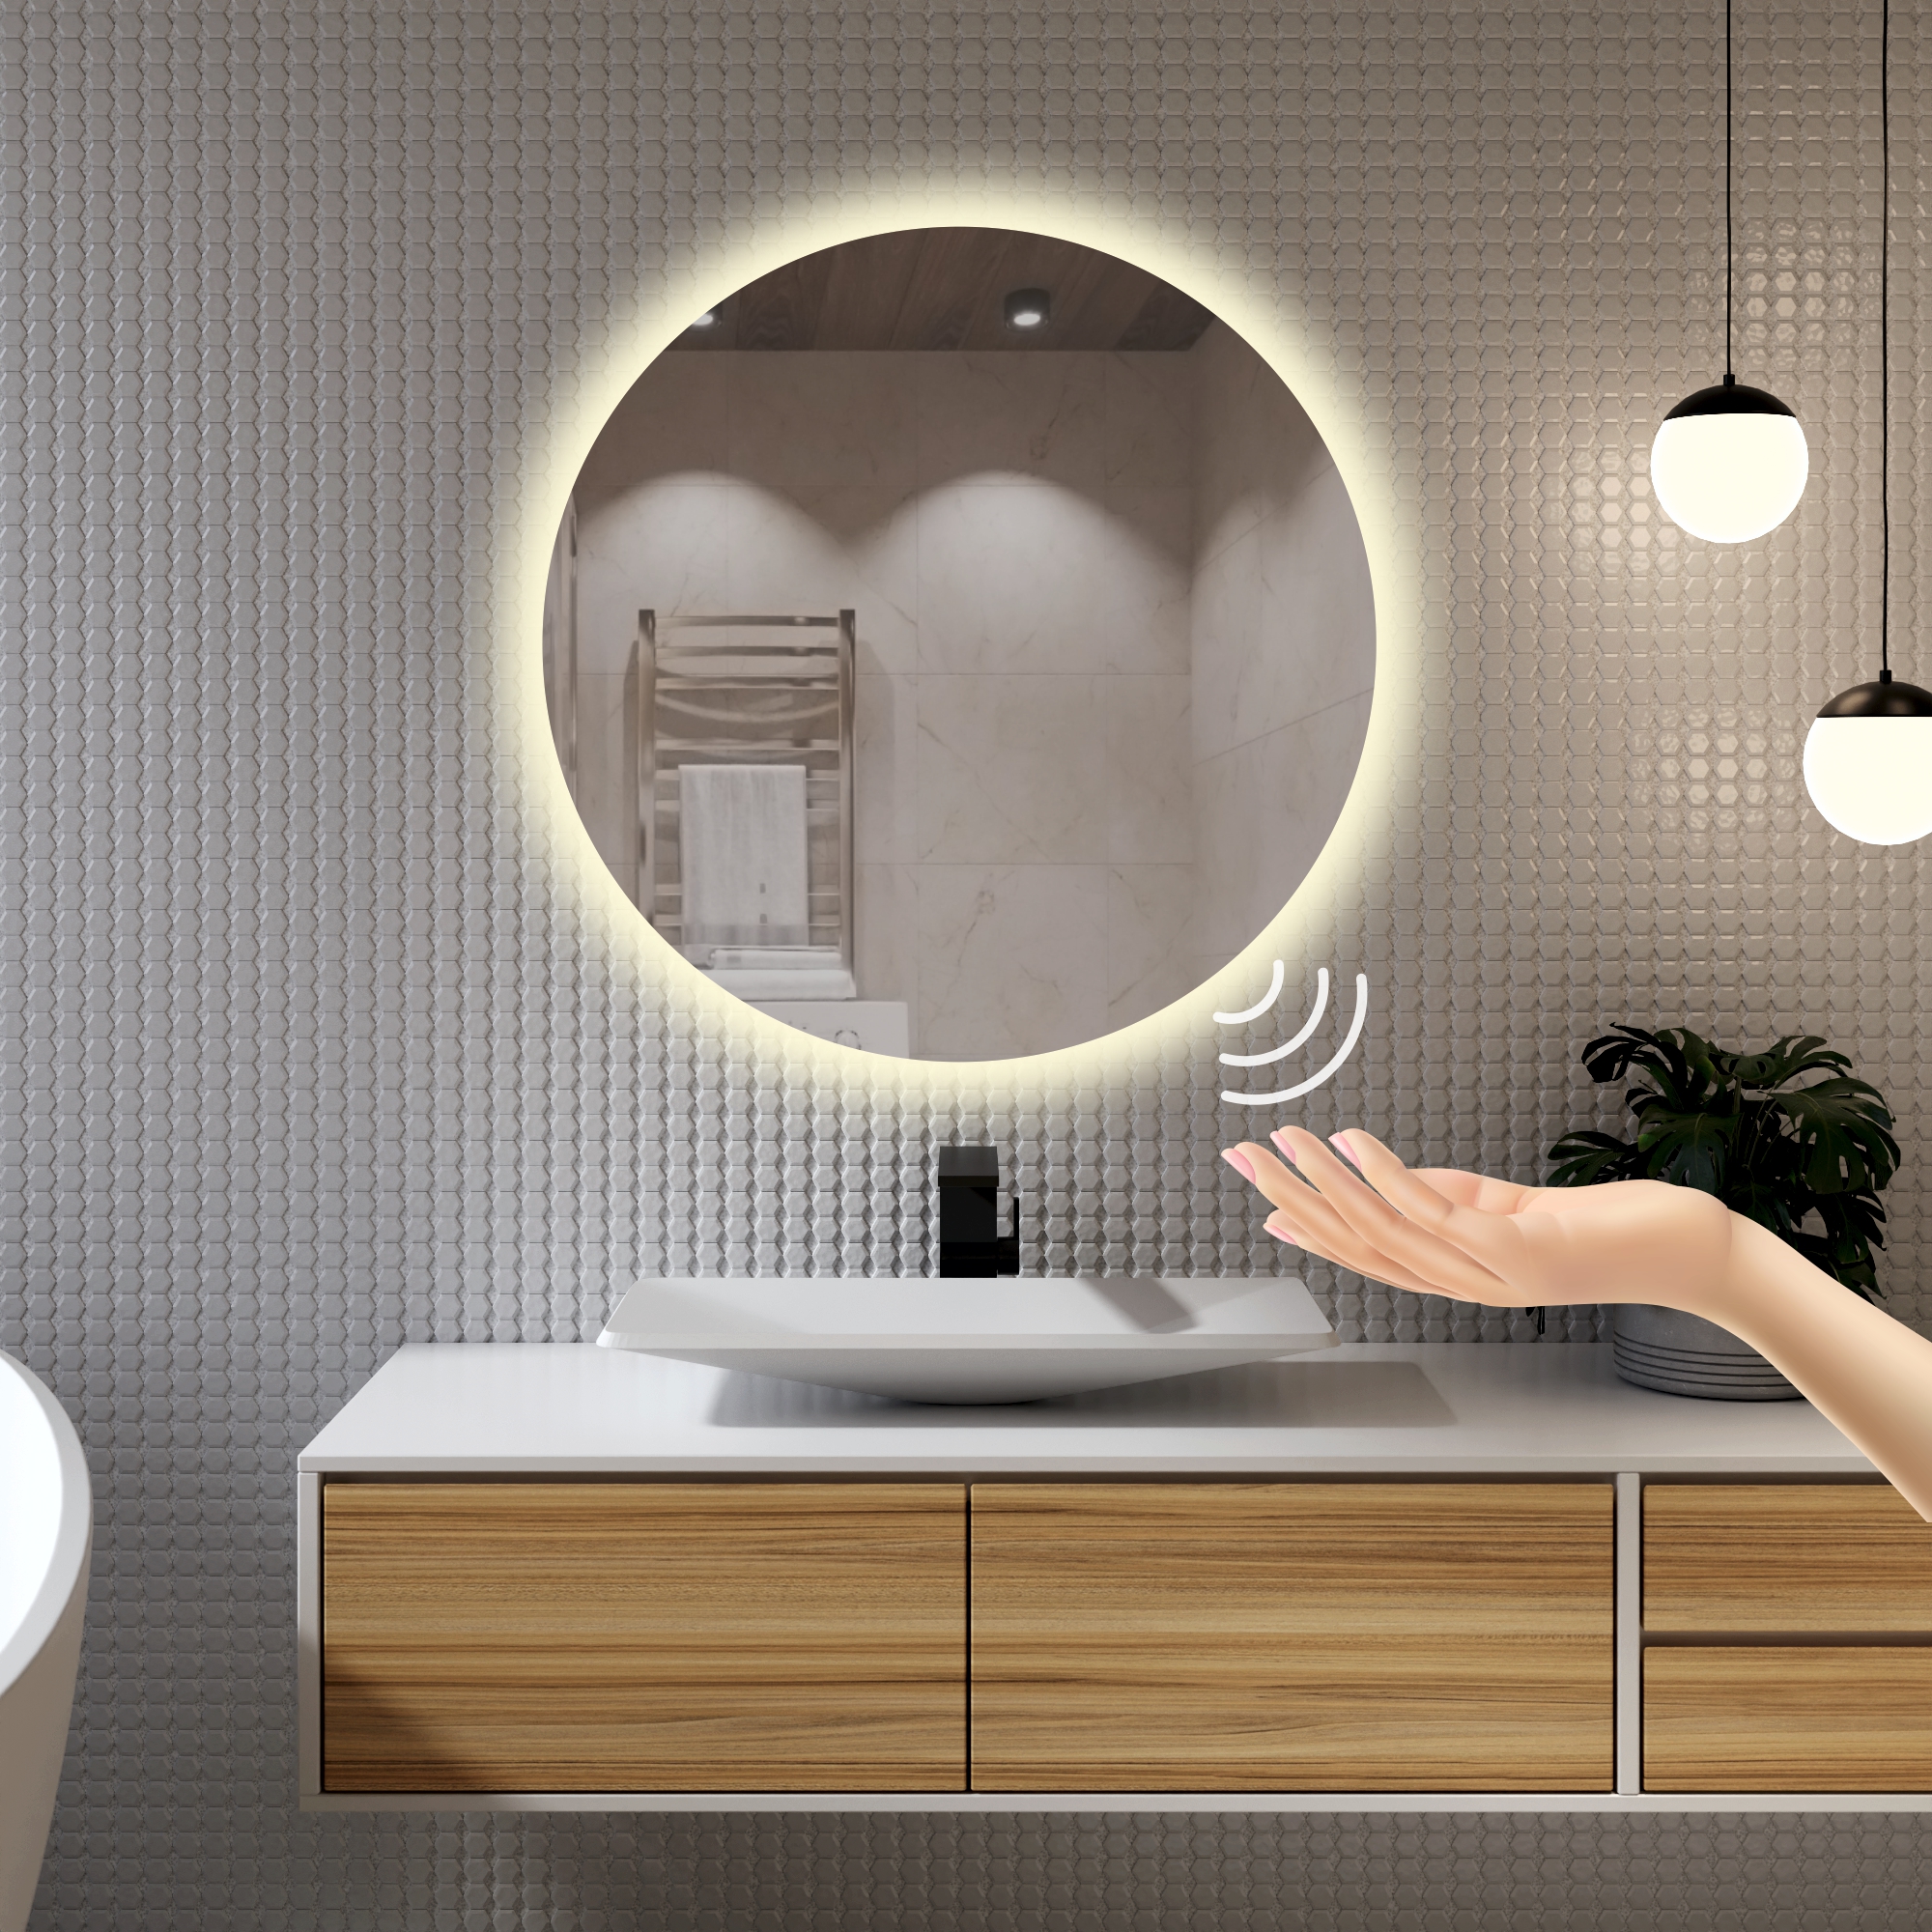 Зеркало для ванной Alfa Mirrors с дневной подсветкой 4200К круглое 60см, арт. Na-6Vzd зеркало glasar круглое белое 60x4x60 см